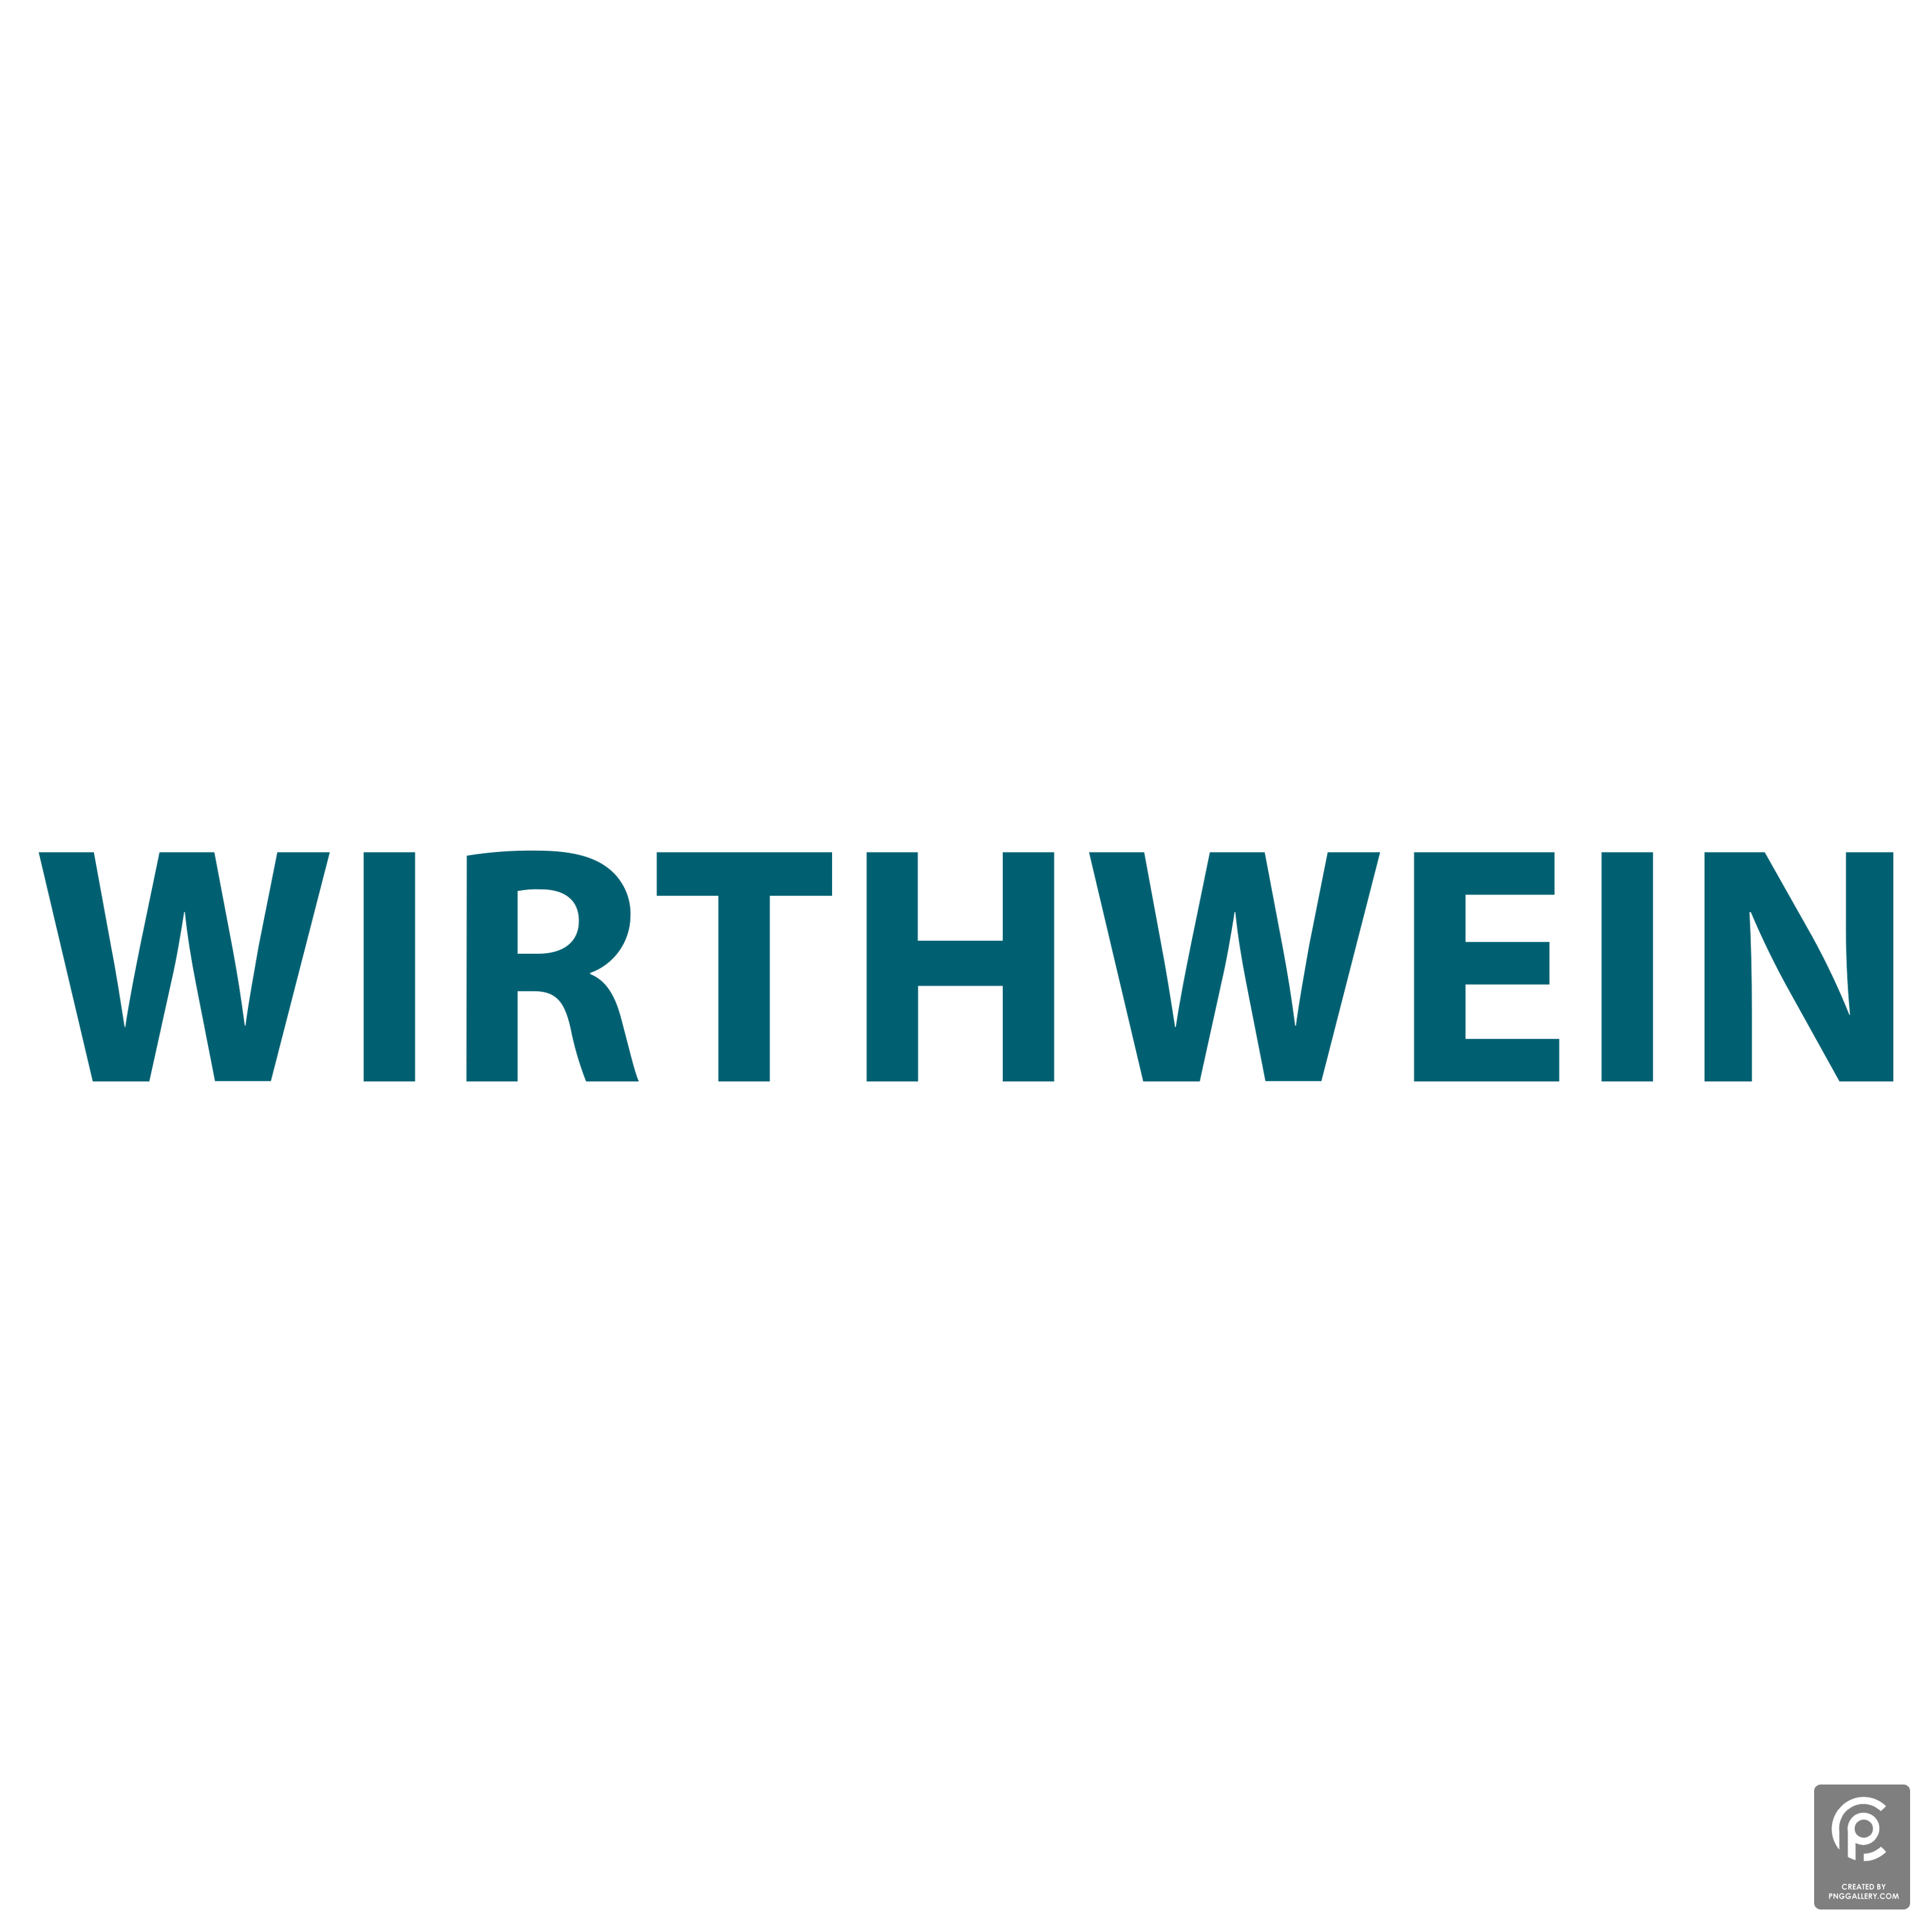 Wirthwein Logo Transparent Picture